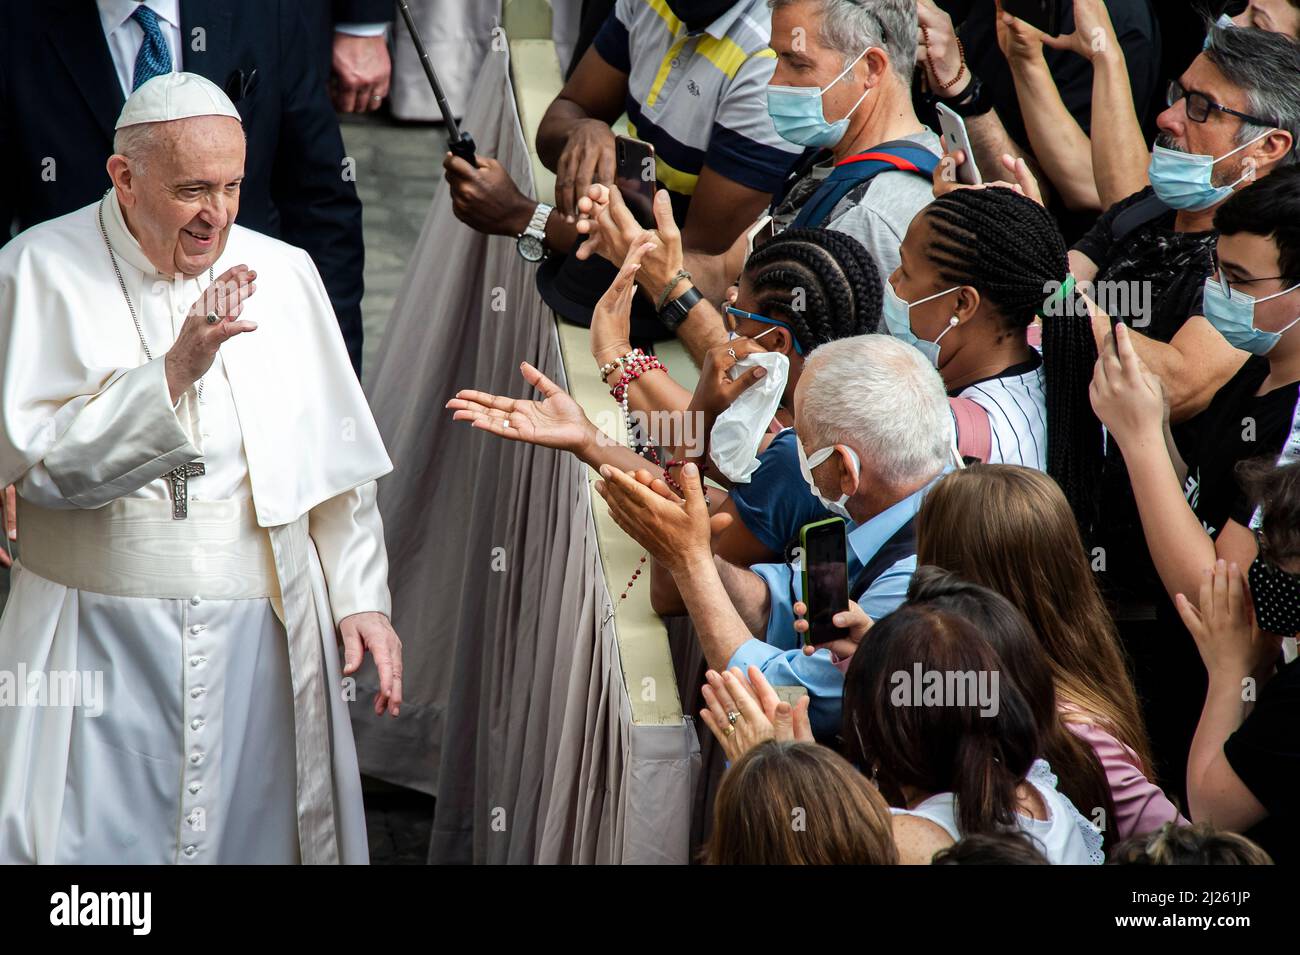 Le pape François rencontre des fidèles à la fin d'une audience publique limitée dans la cour de San Damaso au Vatican. Banque D'Images